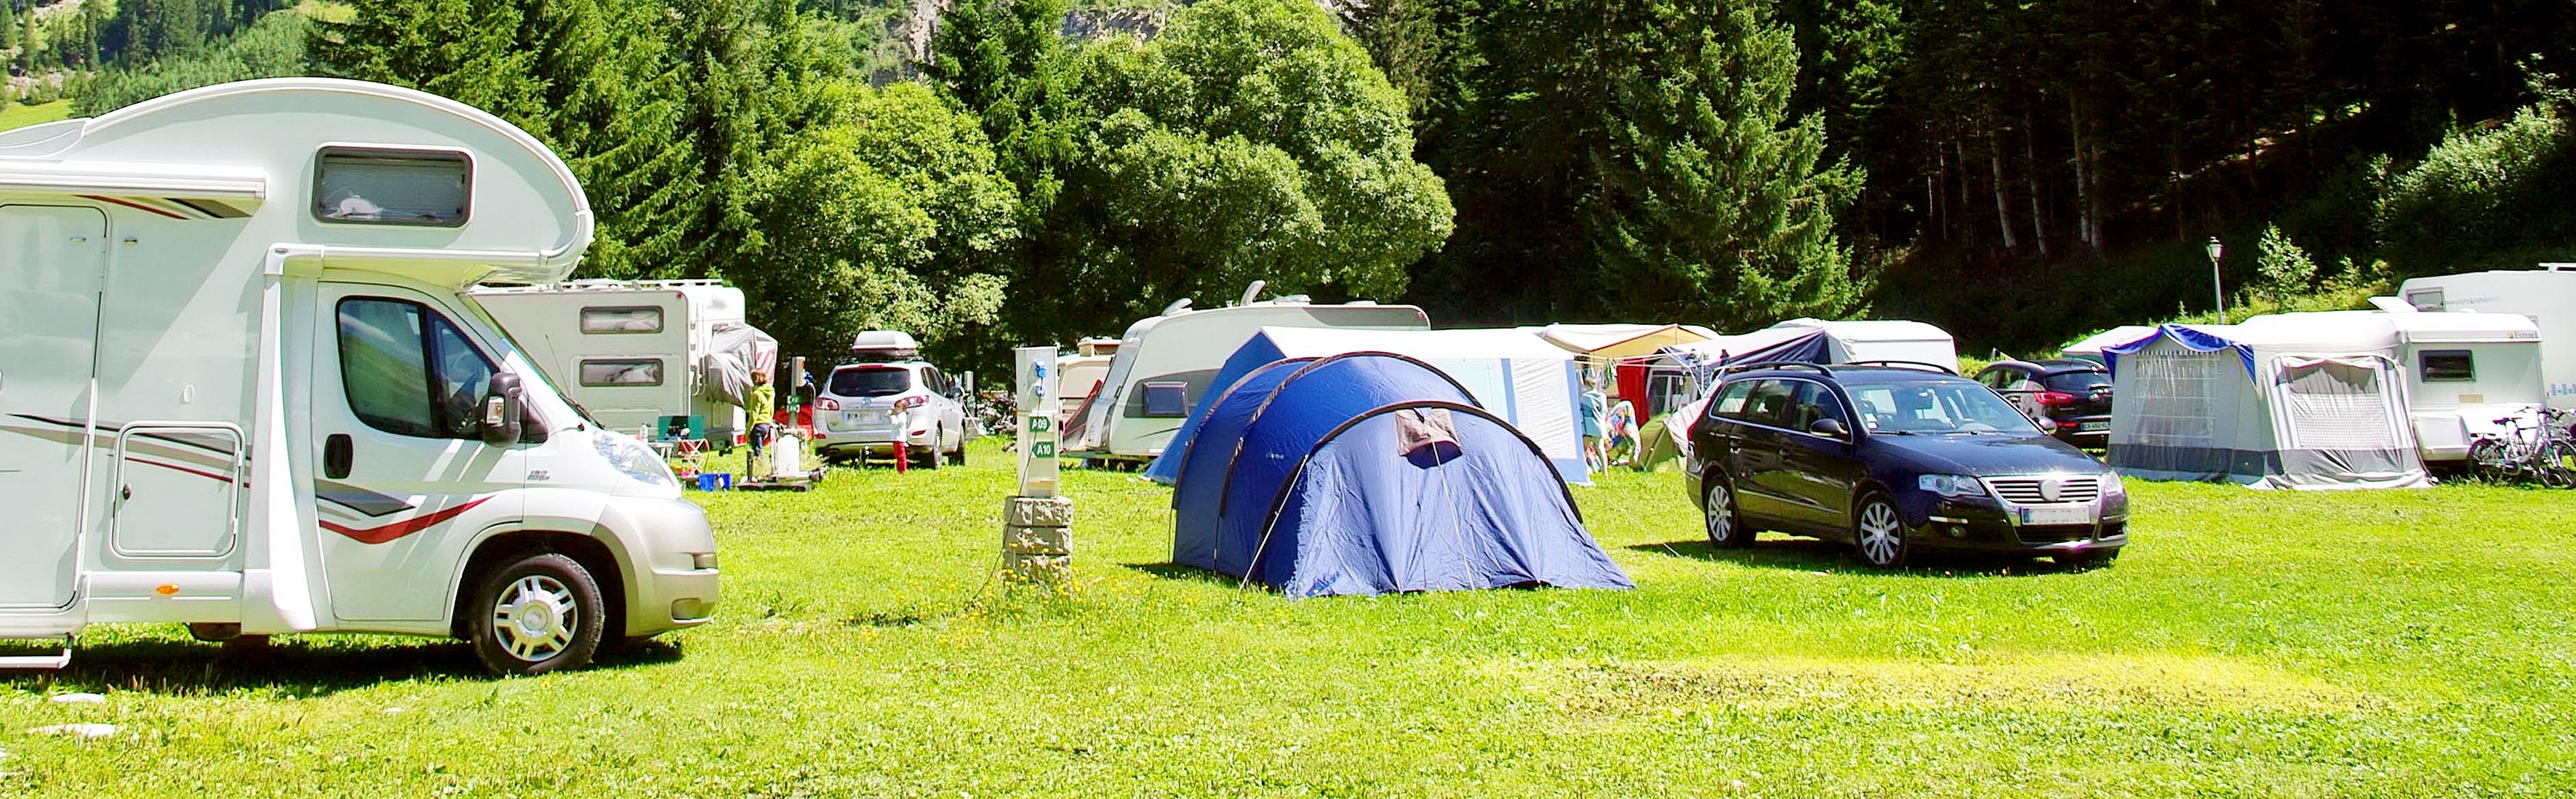 Campingpltze